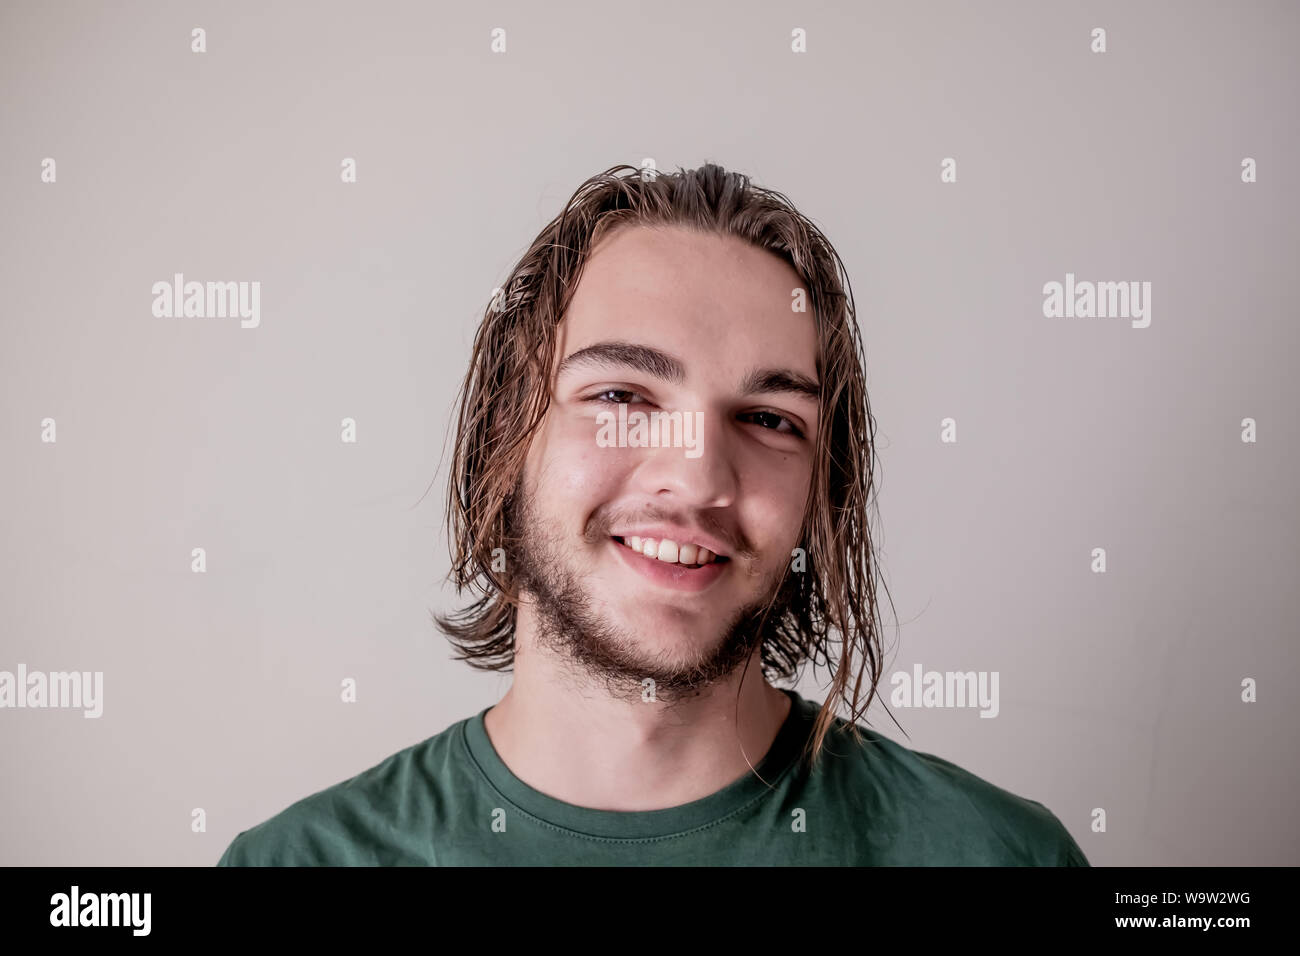 Jungen attraktiven Mann oder junge lächelnde Gesicht Ausdruck mit nassen Haar und Bart, junger Mann portrait Foto Stockfoto